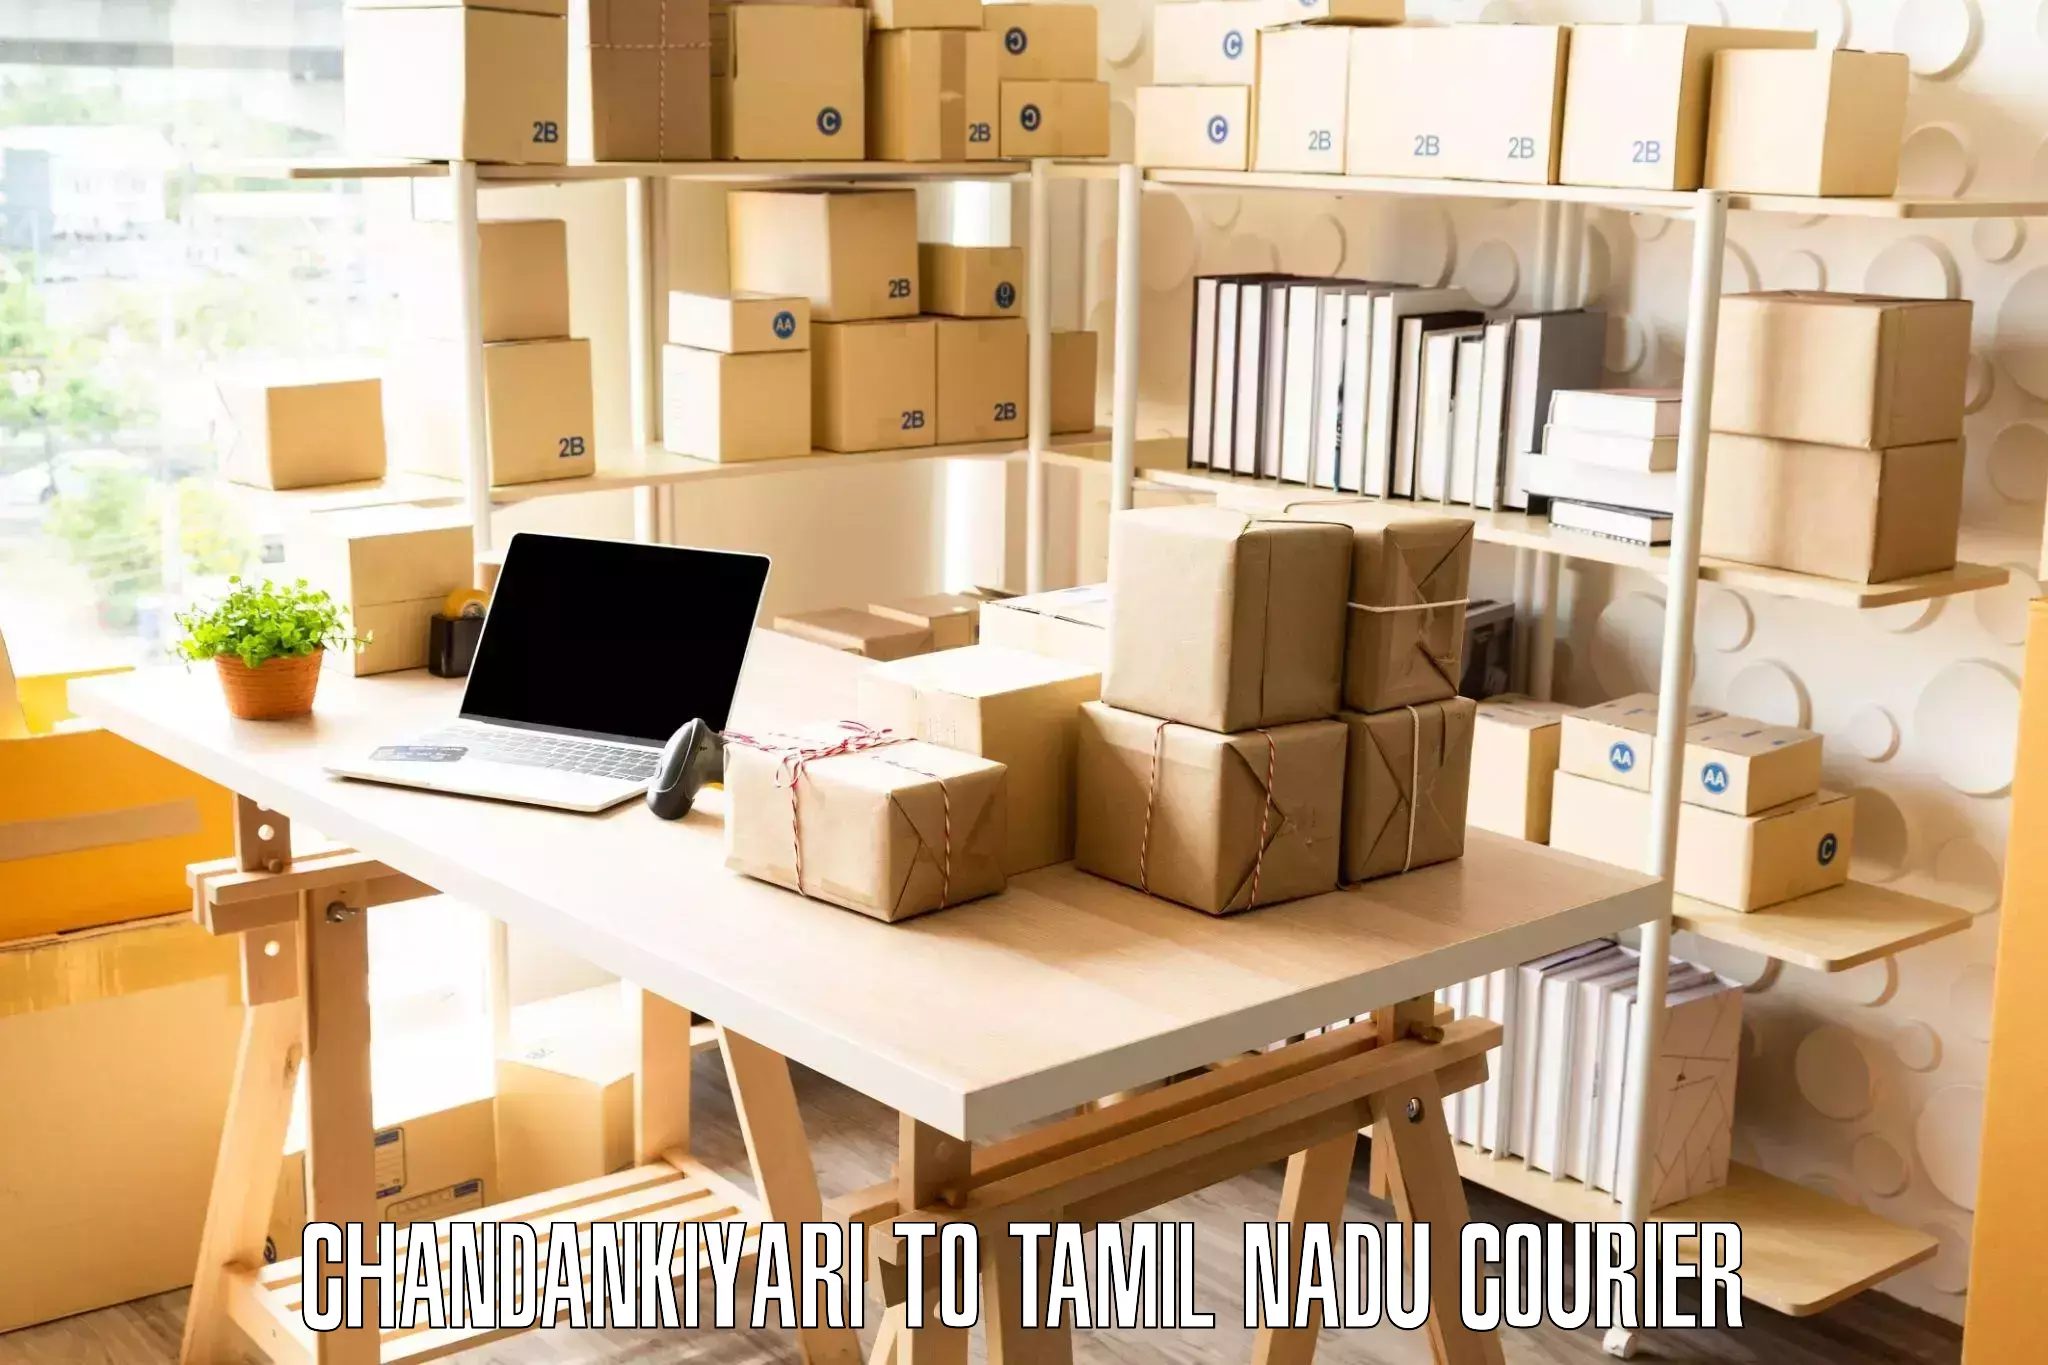 Expert household movers Chandankiyari to Mettupalayam